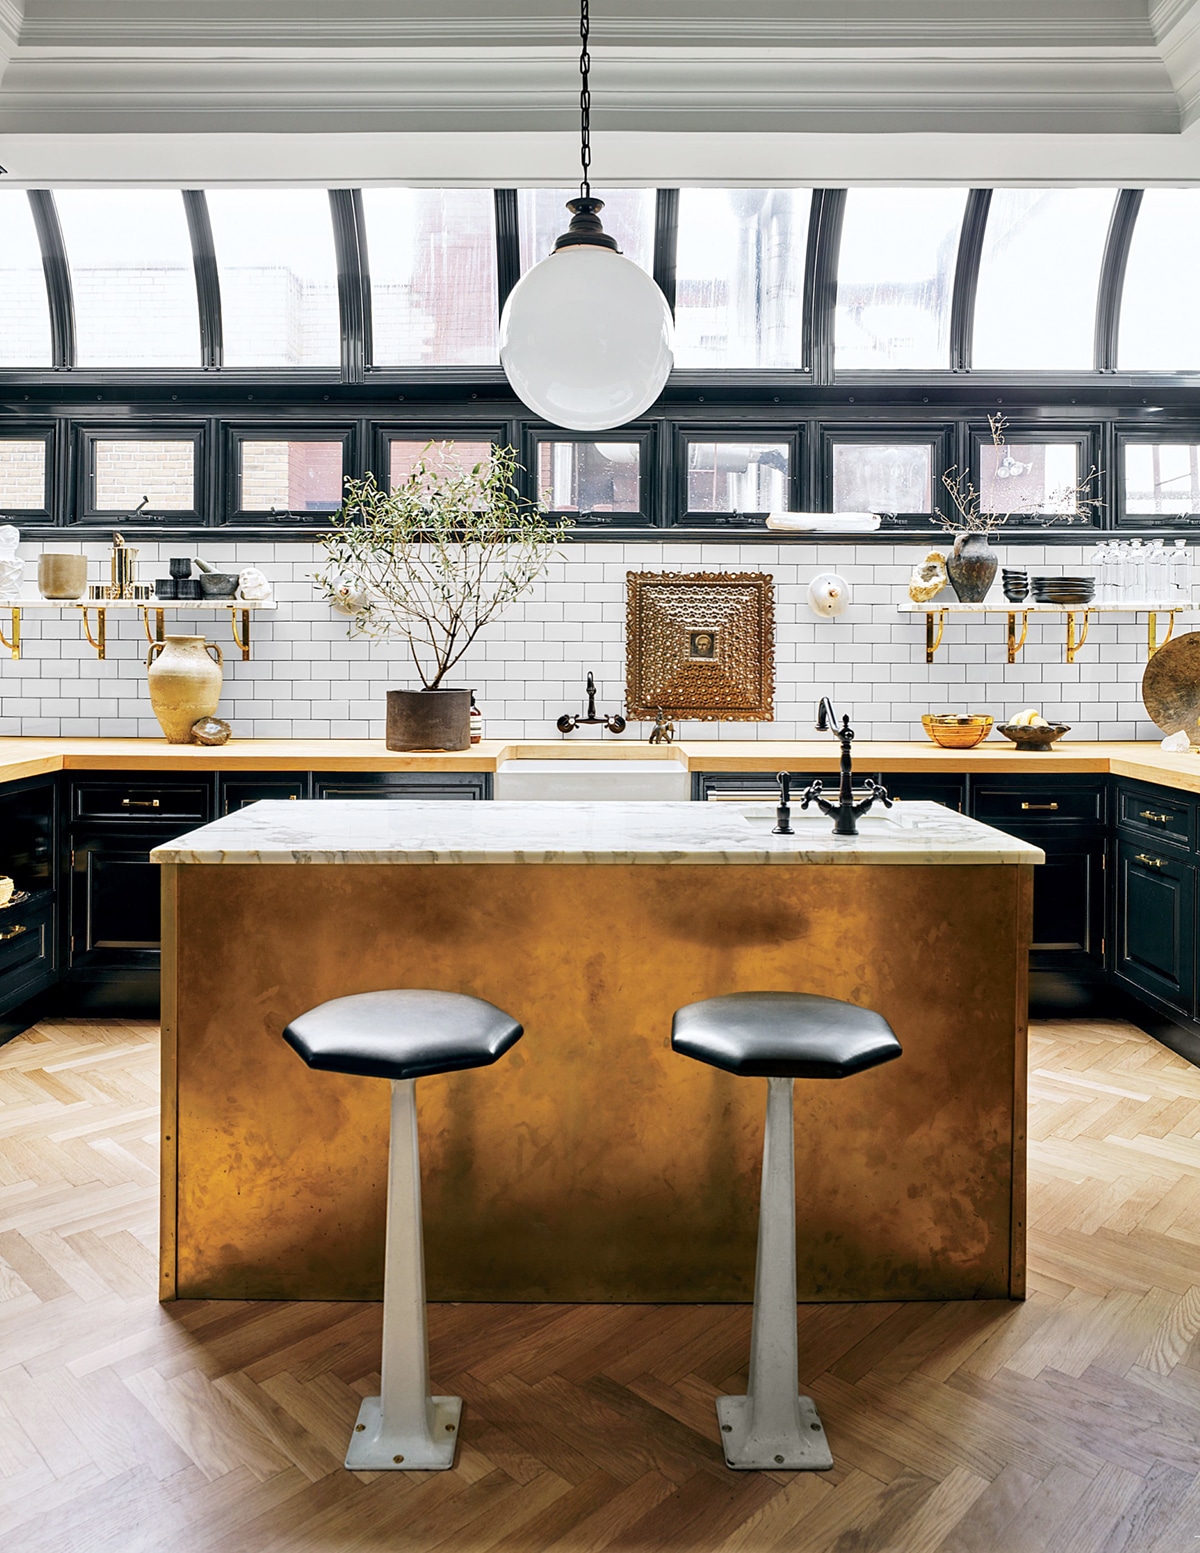 nate berkus' stunning kitchen with brass island and huge windows